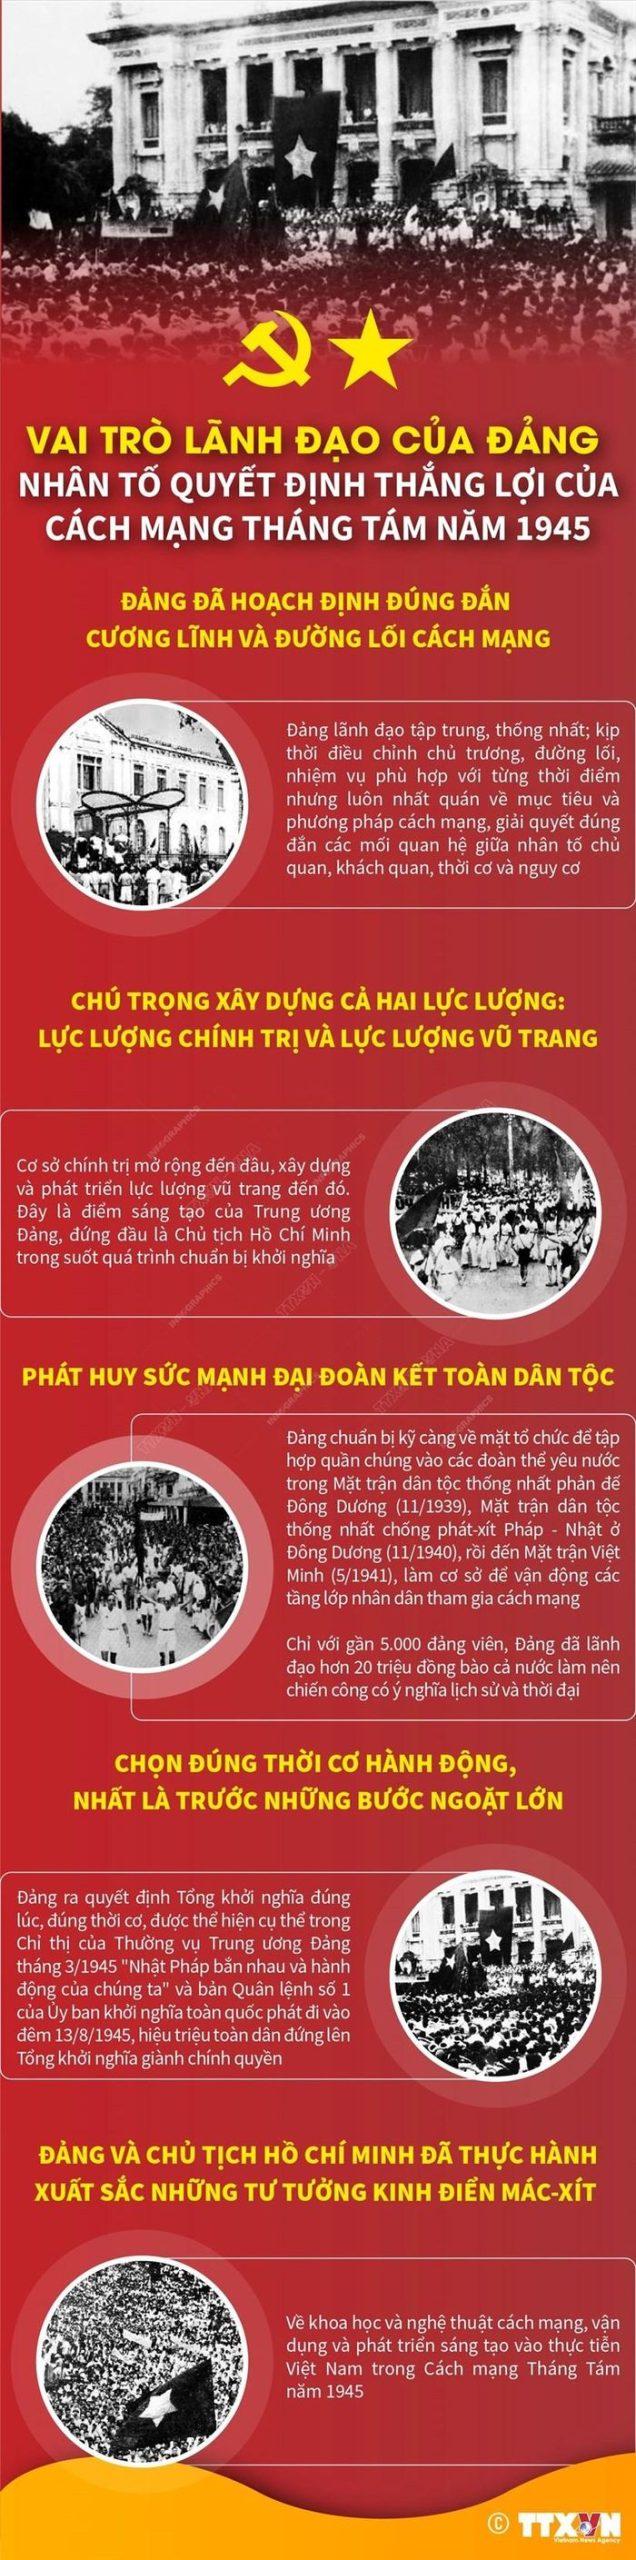 Nhan to quyet dinh thang loi cua Cach mang Thang Tam nam 1945 scaled - Nhân tố quyết định thắng lợi của Cách mạng Tháng Tám năm 1945